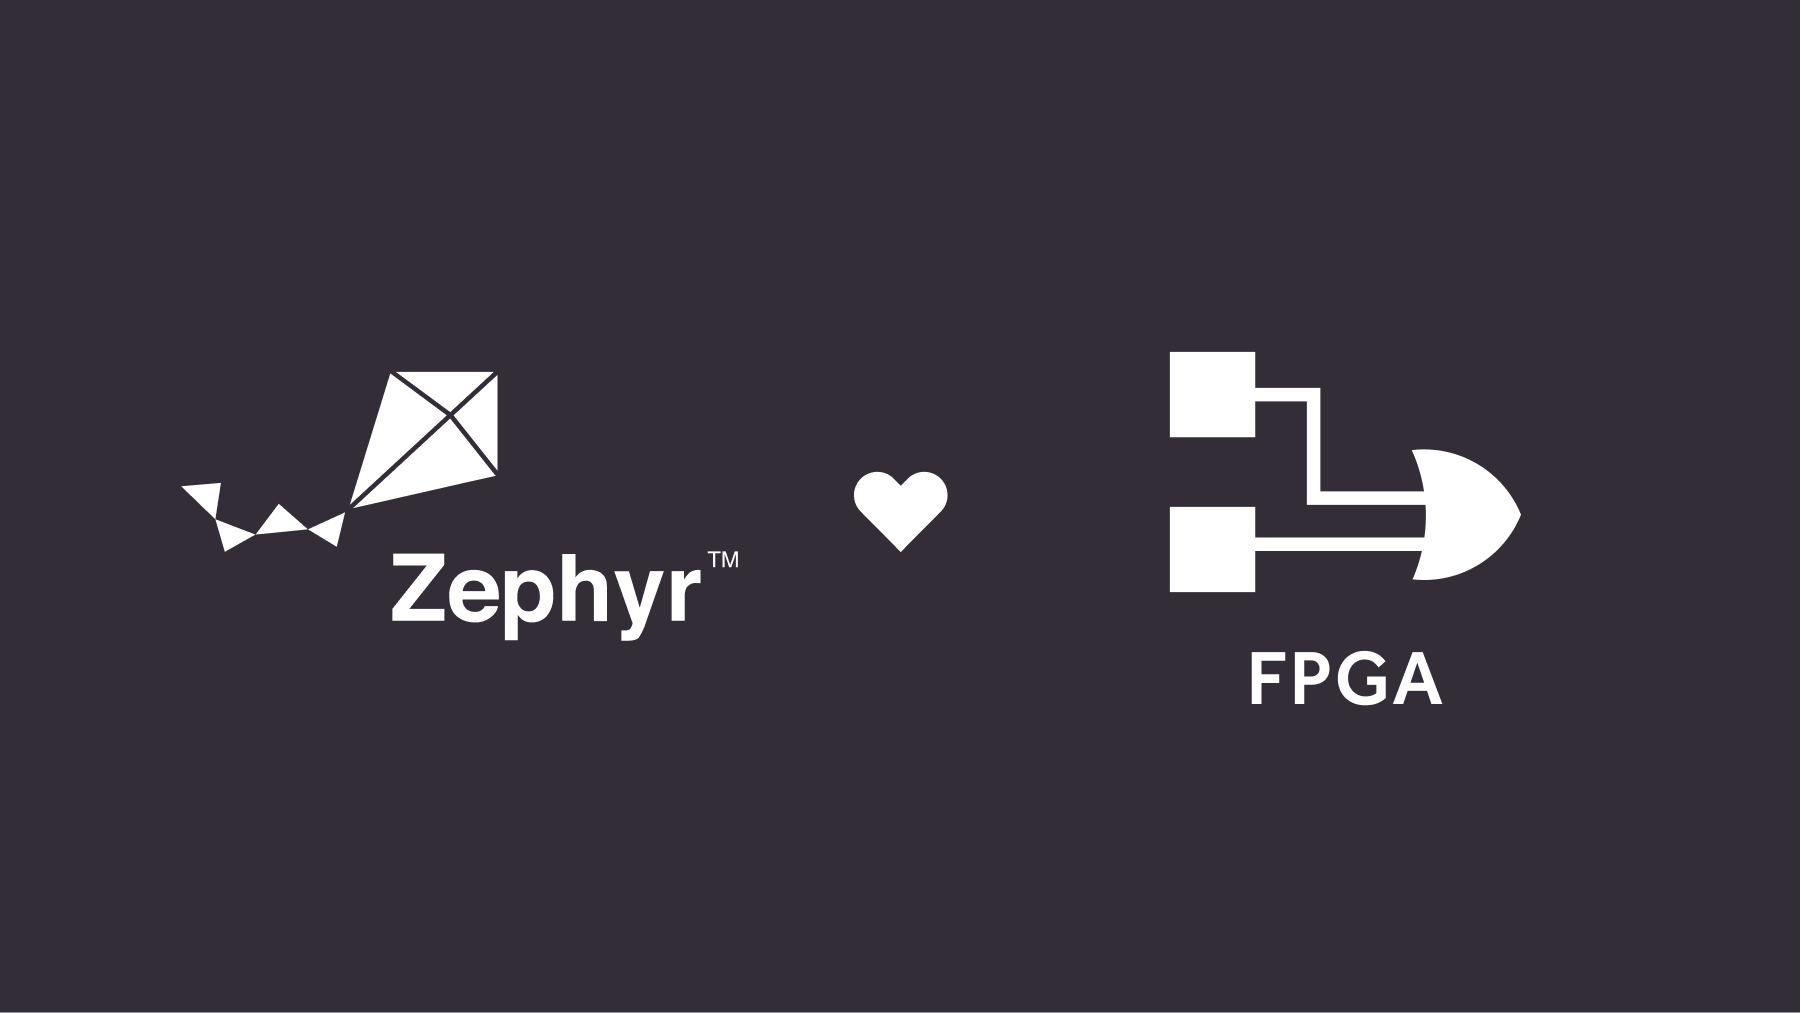 Zepnhyr loves FPGA